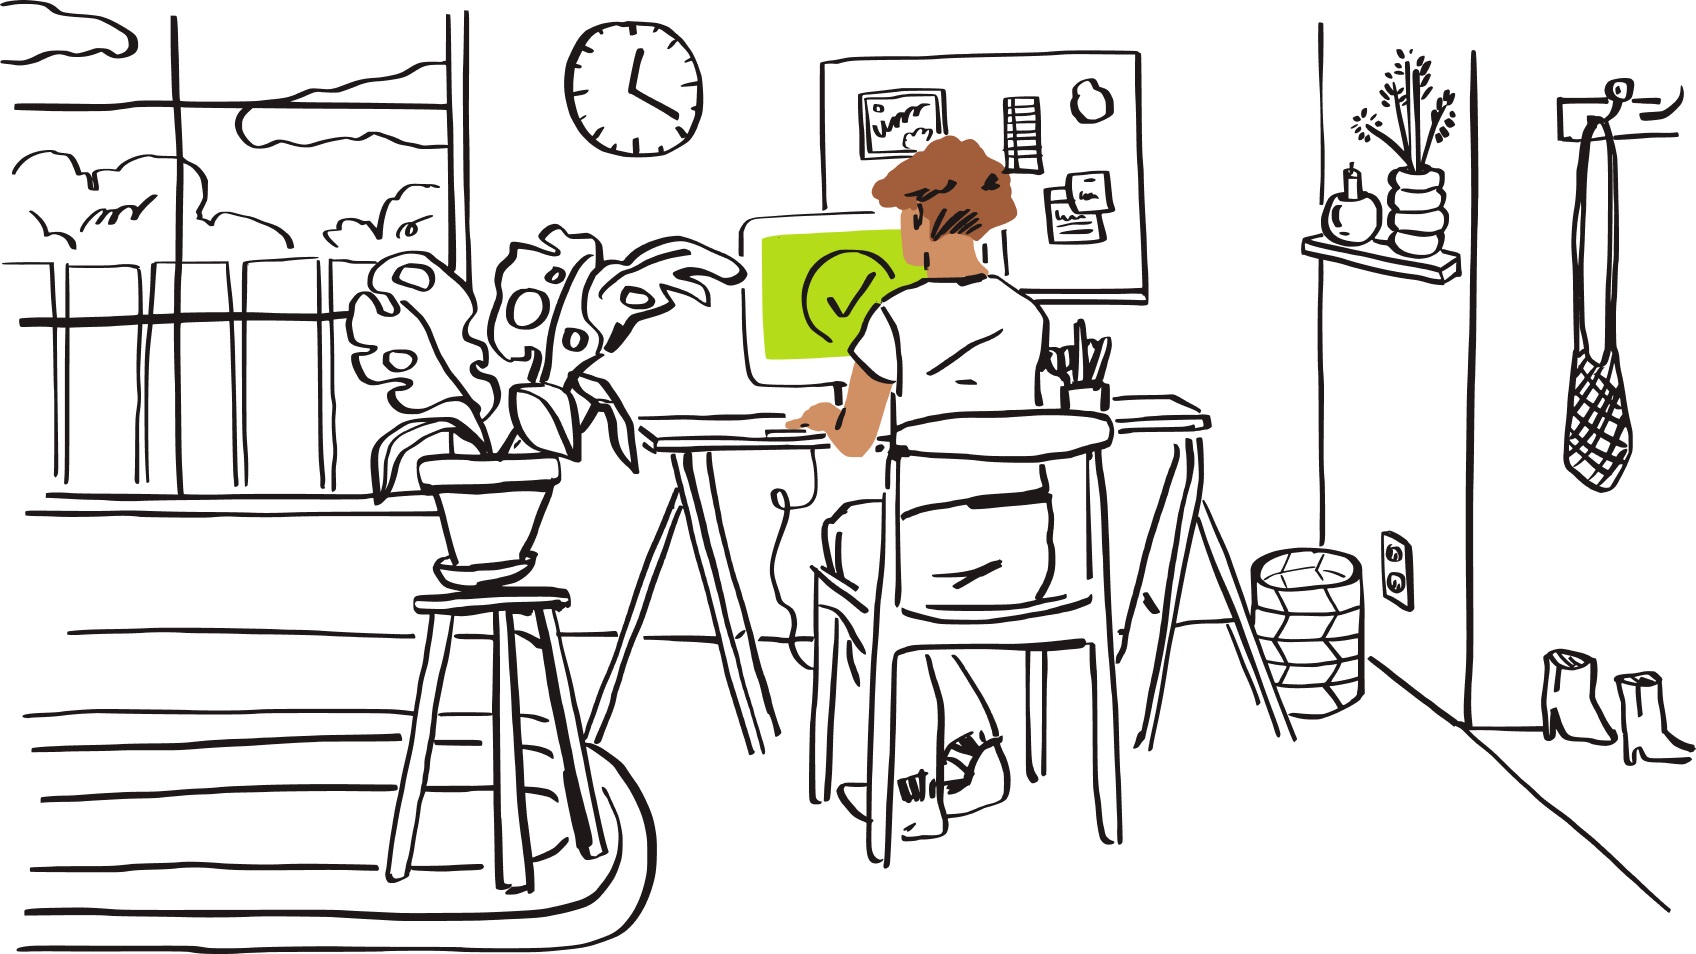 Un trabajador remoto se sienta en su escritorio en su oficina en casa, con una pantalla verde y un tilde que aparece en su monitor.